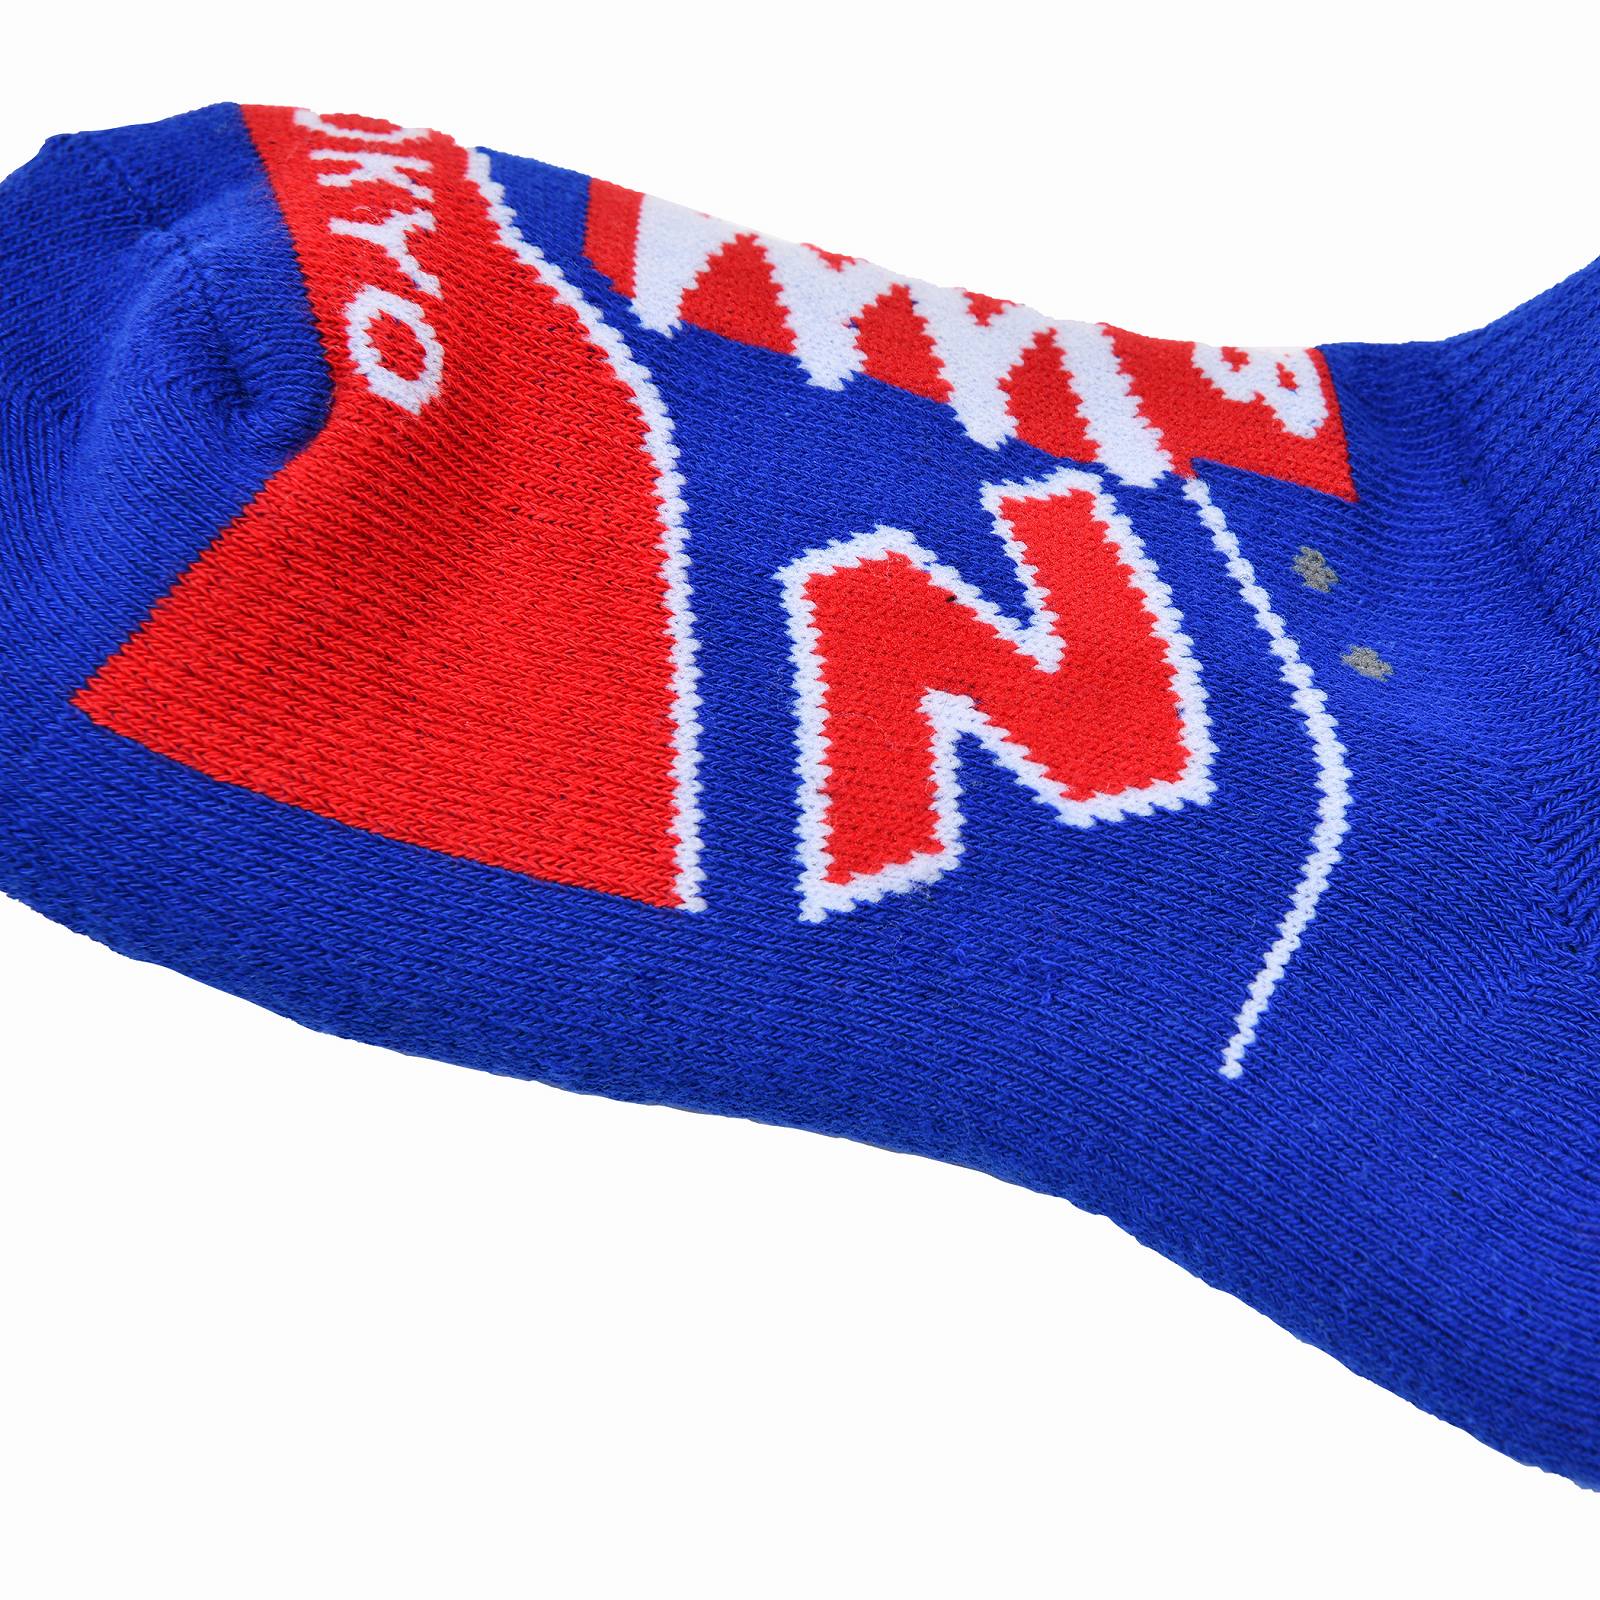 Sneaker pattern pile socks in FC Tokyo club colors, custom order